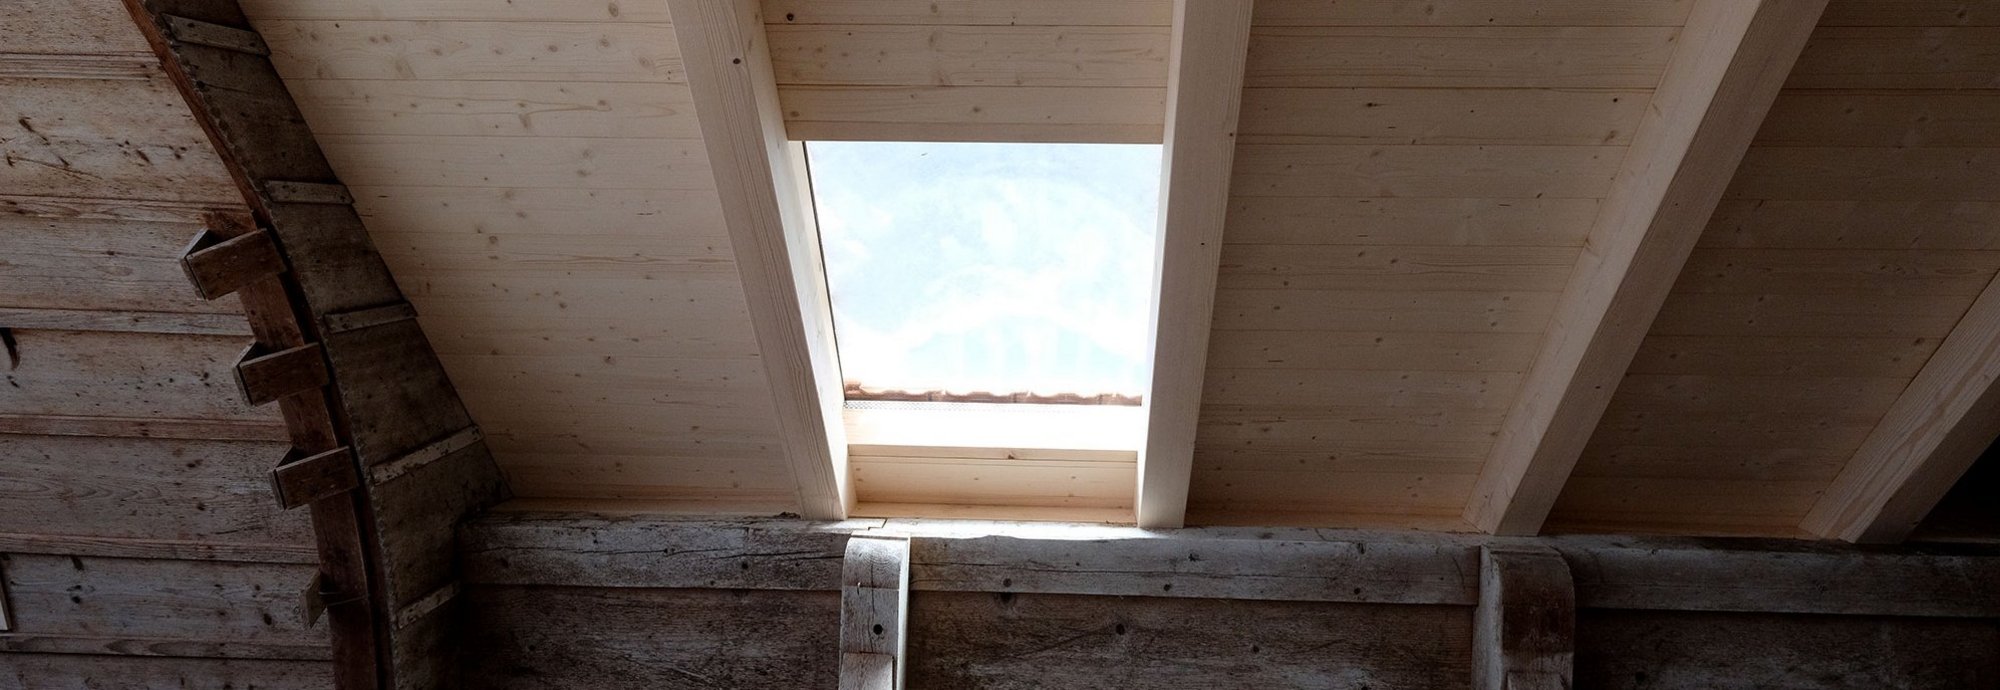 Dachfenster und Sonnenschutz - M. Krähenbühl AG Zollbrück